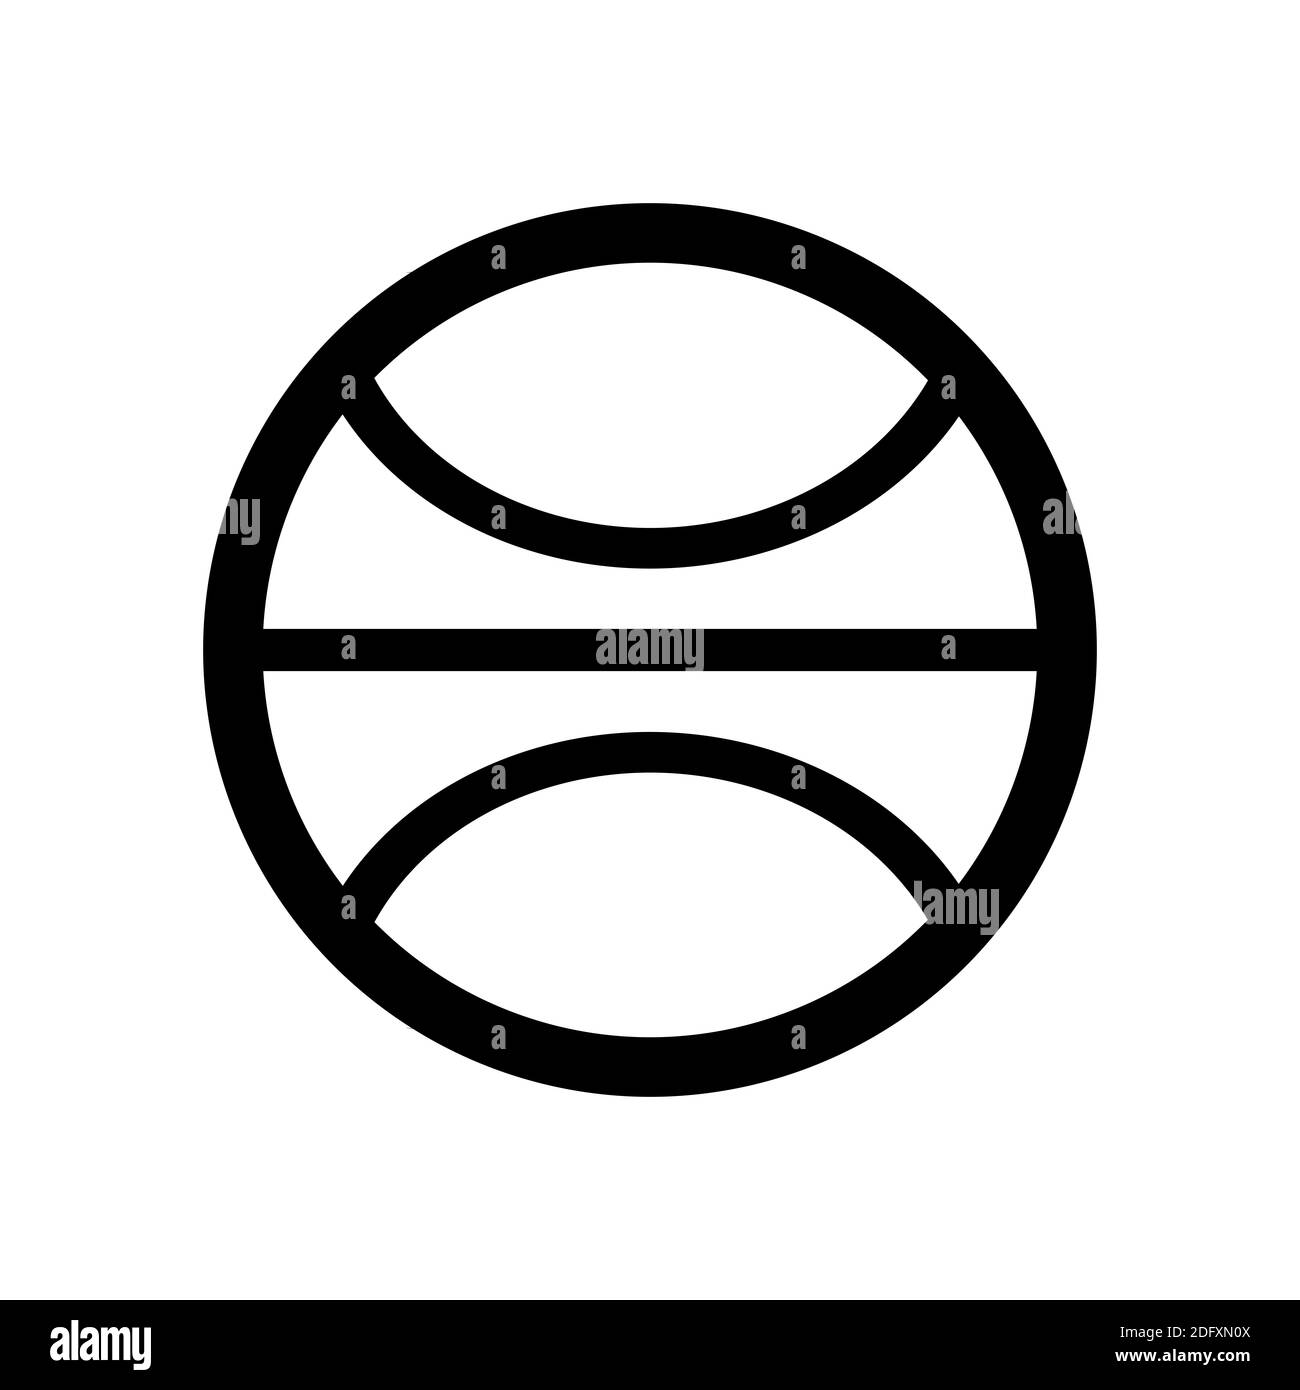 Das Symbol der Terra, eines der Symbole der Alchemie. Schwarz-weiße Terrakotta-Ikone. Stockfoto